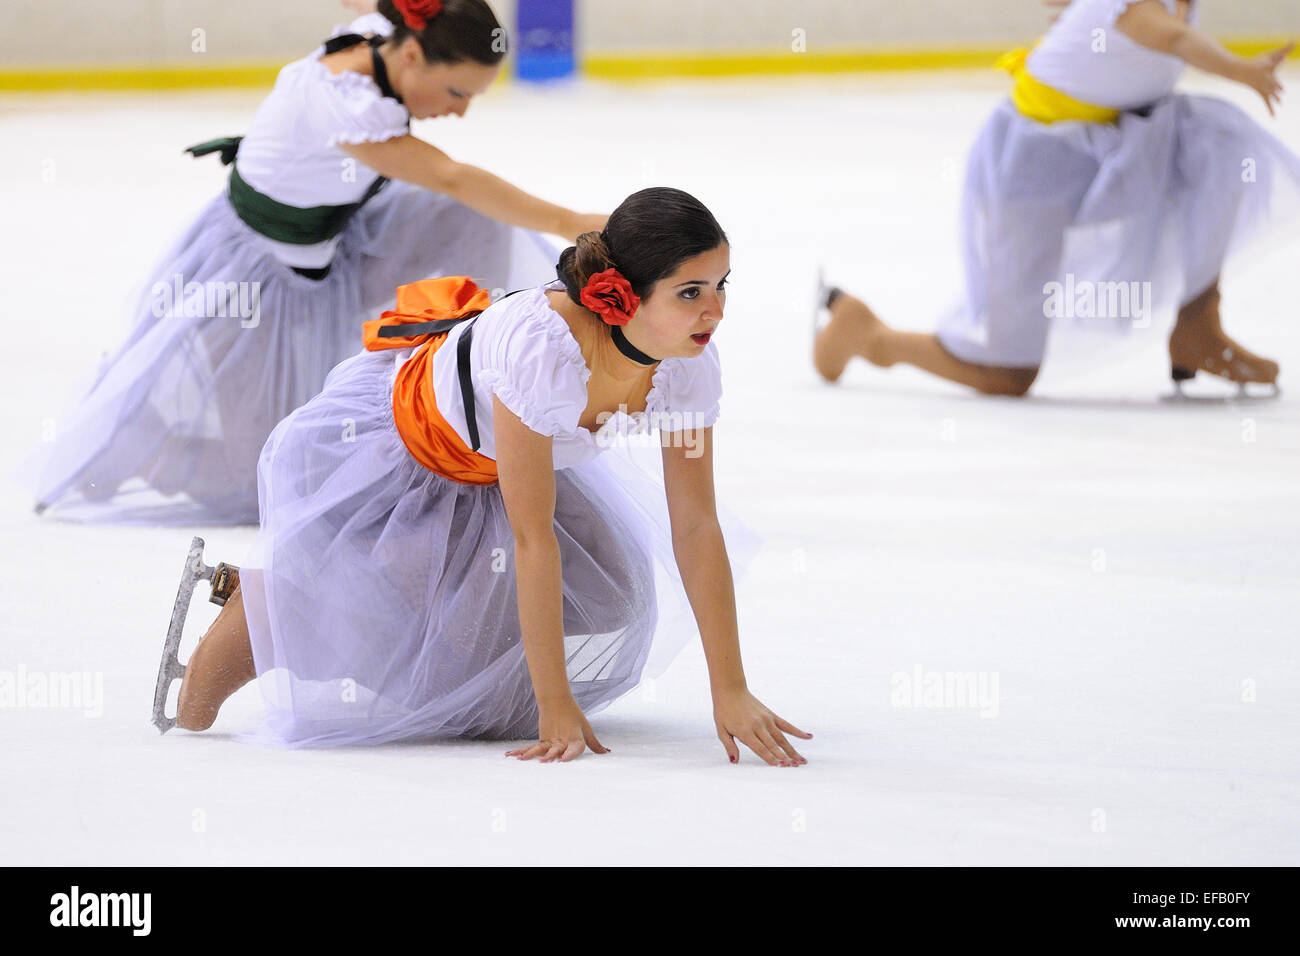 Barcellona - 03 Maggio: giovane team da una scuola di pattinaggio su ghiaccio esegue, dissimulata come ballerina di flamenco. Foto Stock